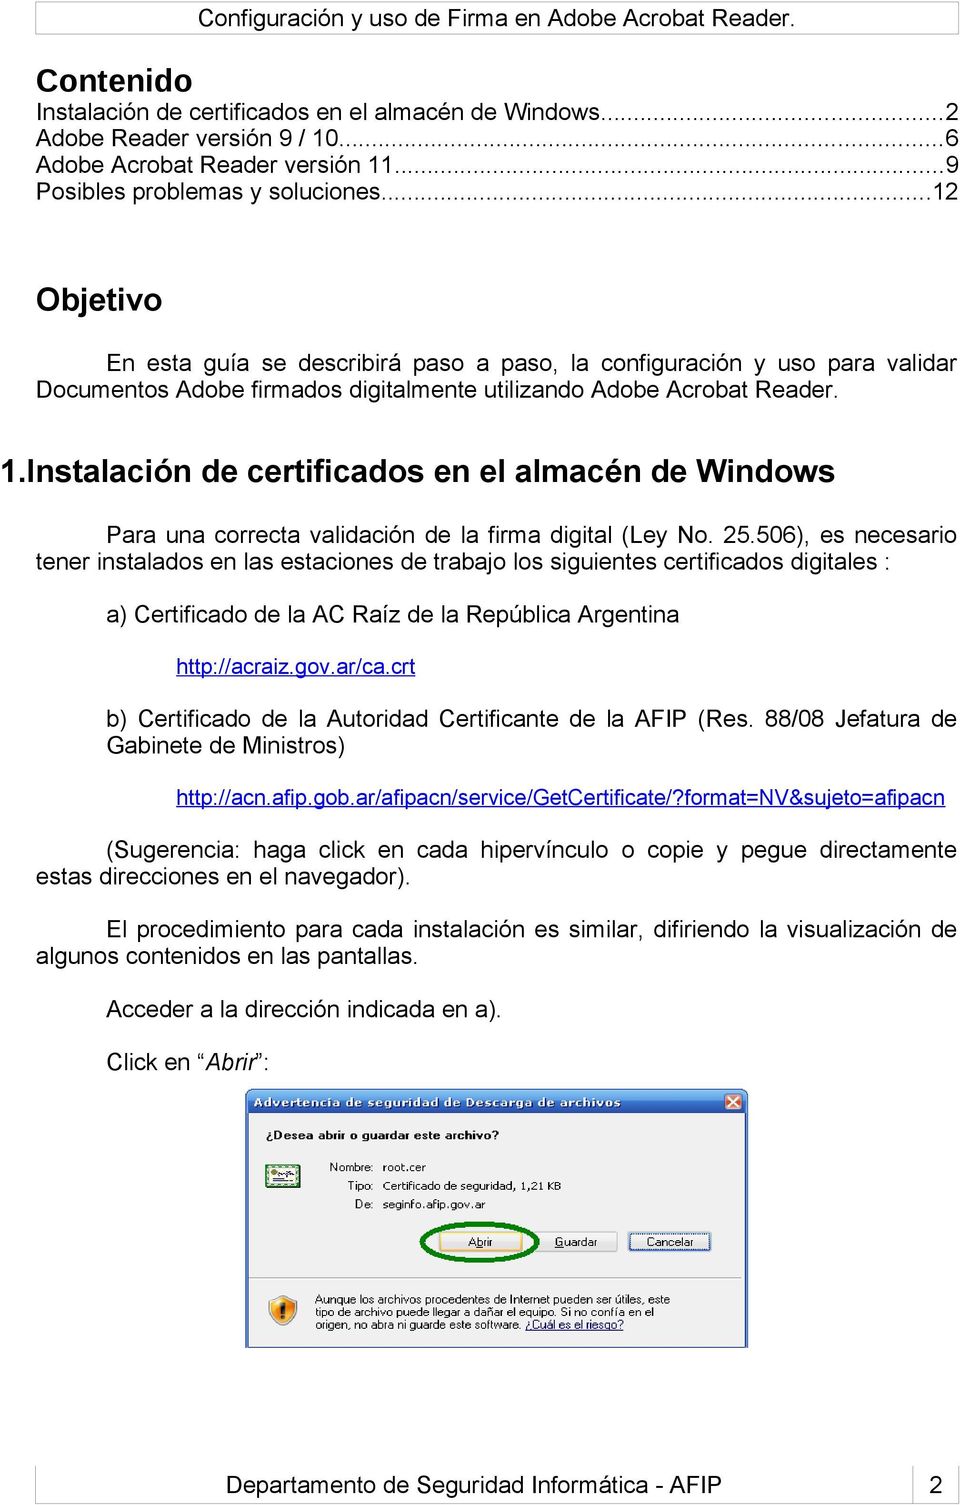 Instalación de certificados en el almacén de Windows Para una correcta validación de la firma digital (Ley No. 25.